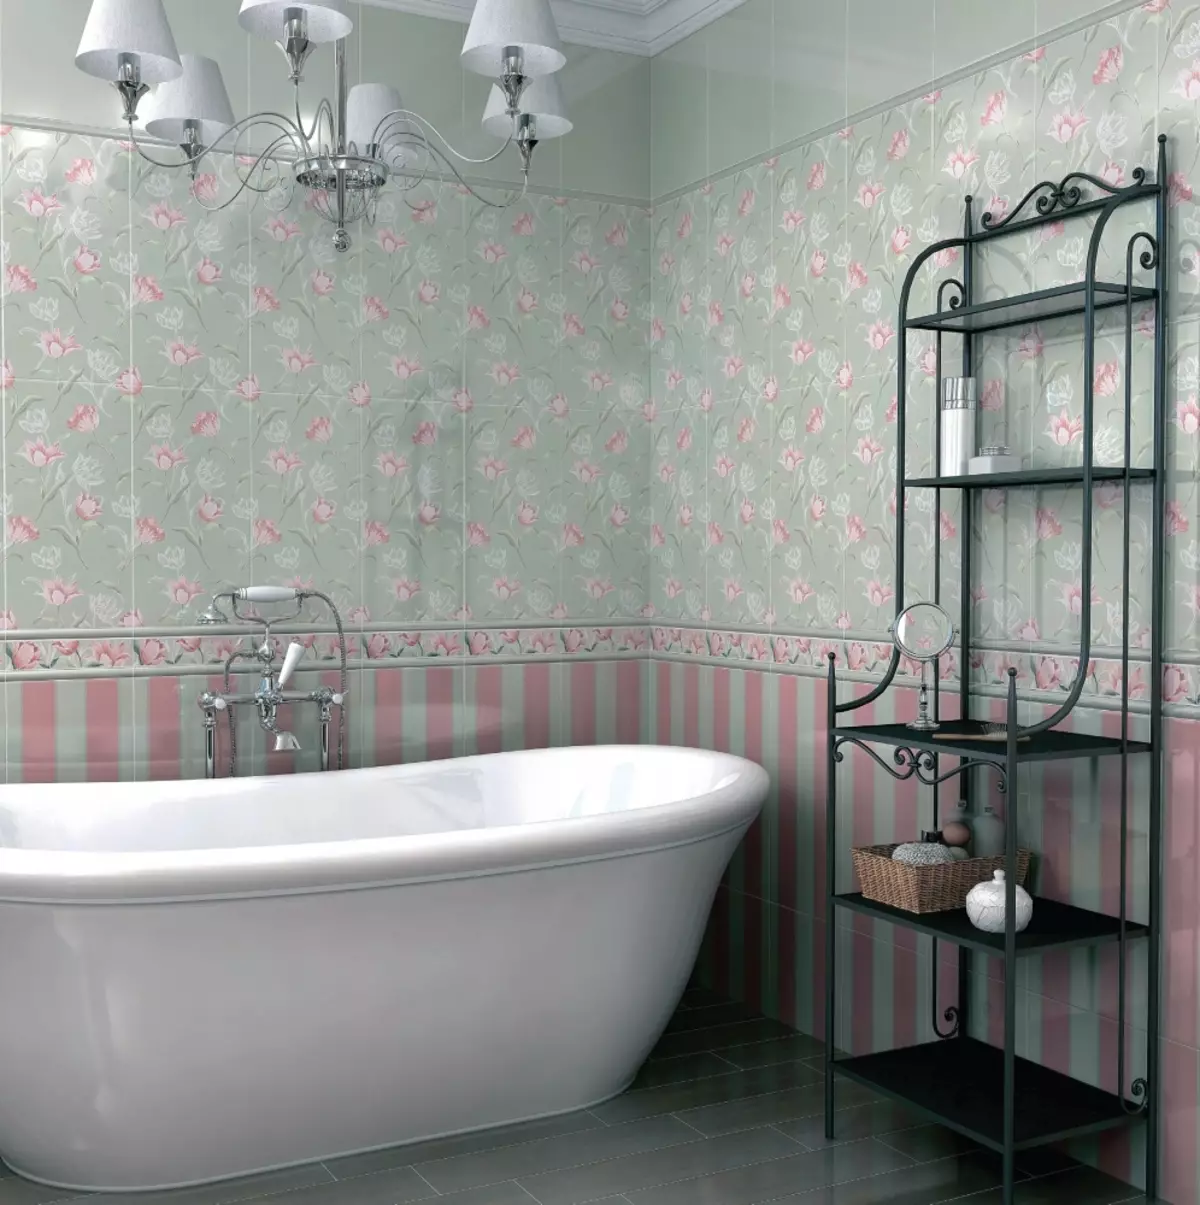 Azulejos de baño ruso: cerámica y otros azulejos para el baño de los fabricantes de Rusia. Diseño de azulejos de producción rusa. 10124_24